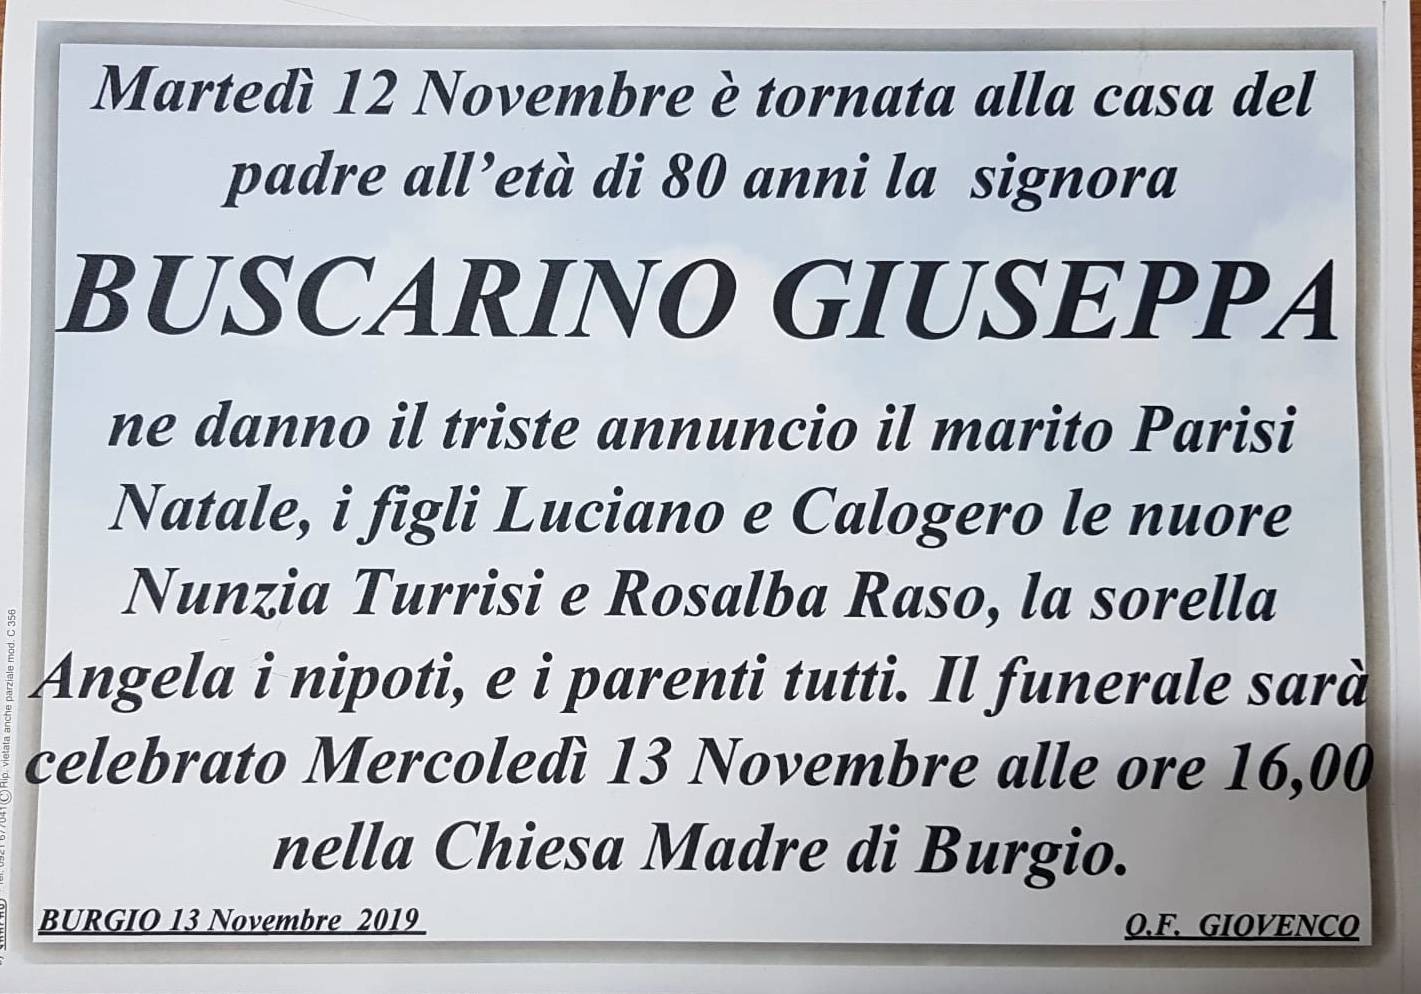 Giuseppa Buscarino